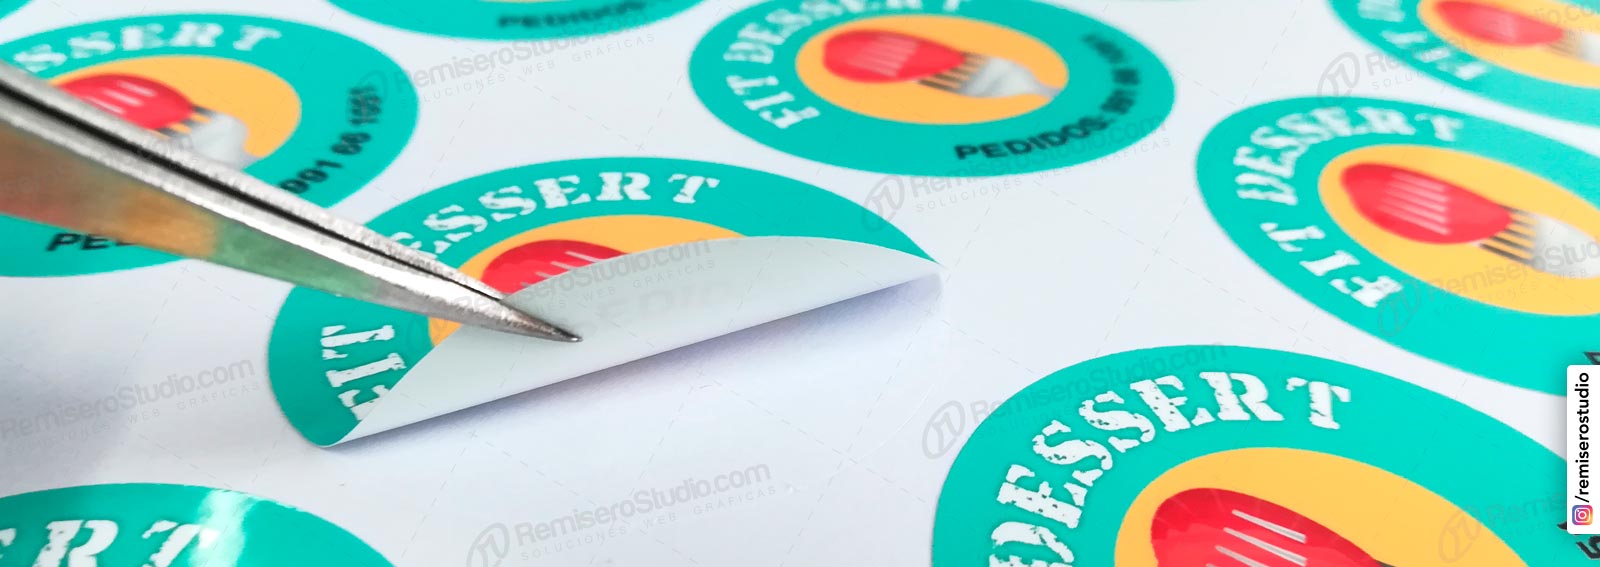 Imprime pegatinas personalizadas de forma rápida y sencilla